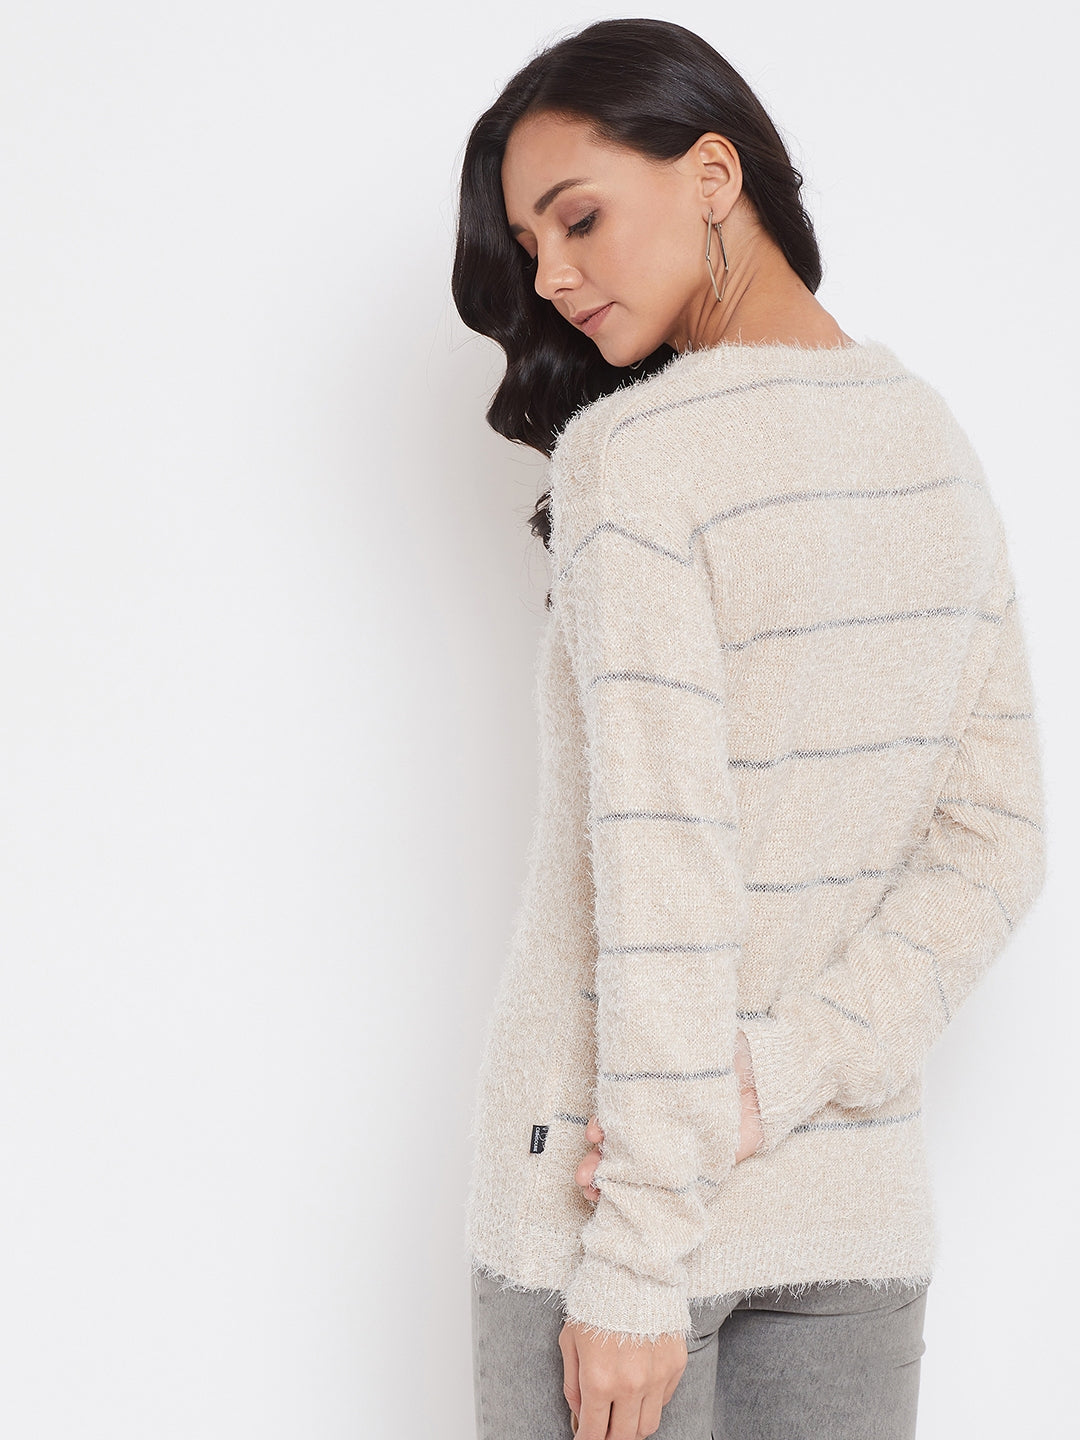 Beige Self Design Round Neck Sweater - Women Sweaters